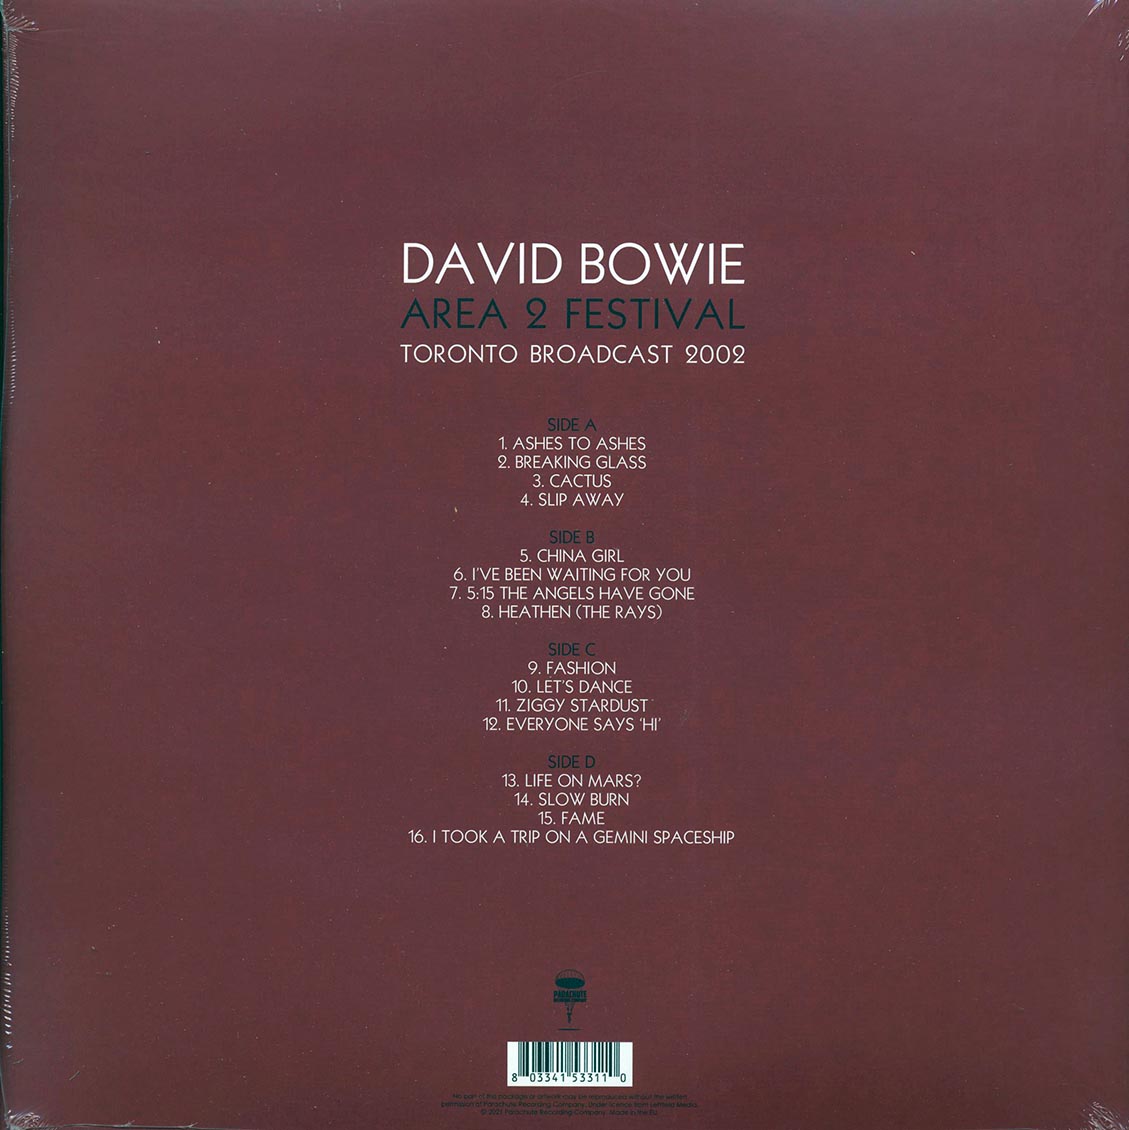 David Bowie - Area 2 Festival: Toronto Broadcast 2002 (2xLP) - Vinyl LP, LP